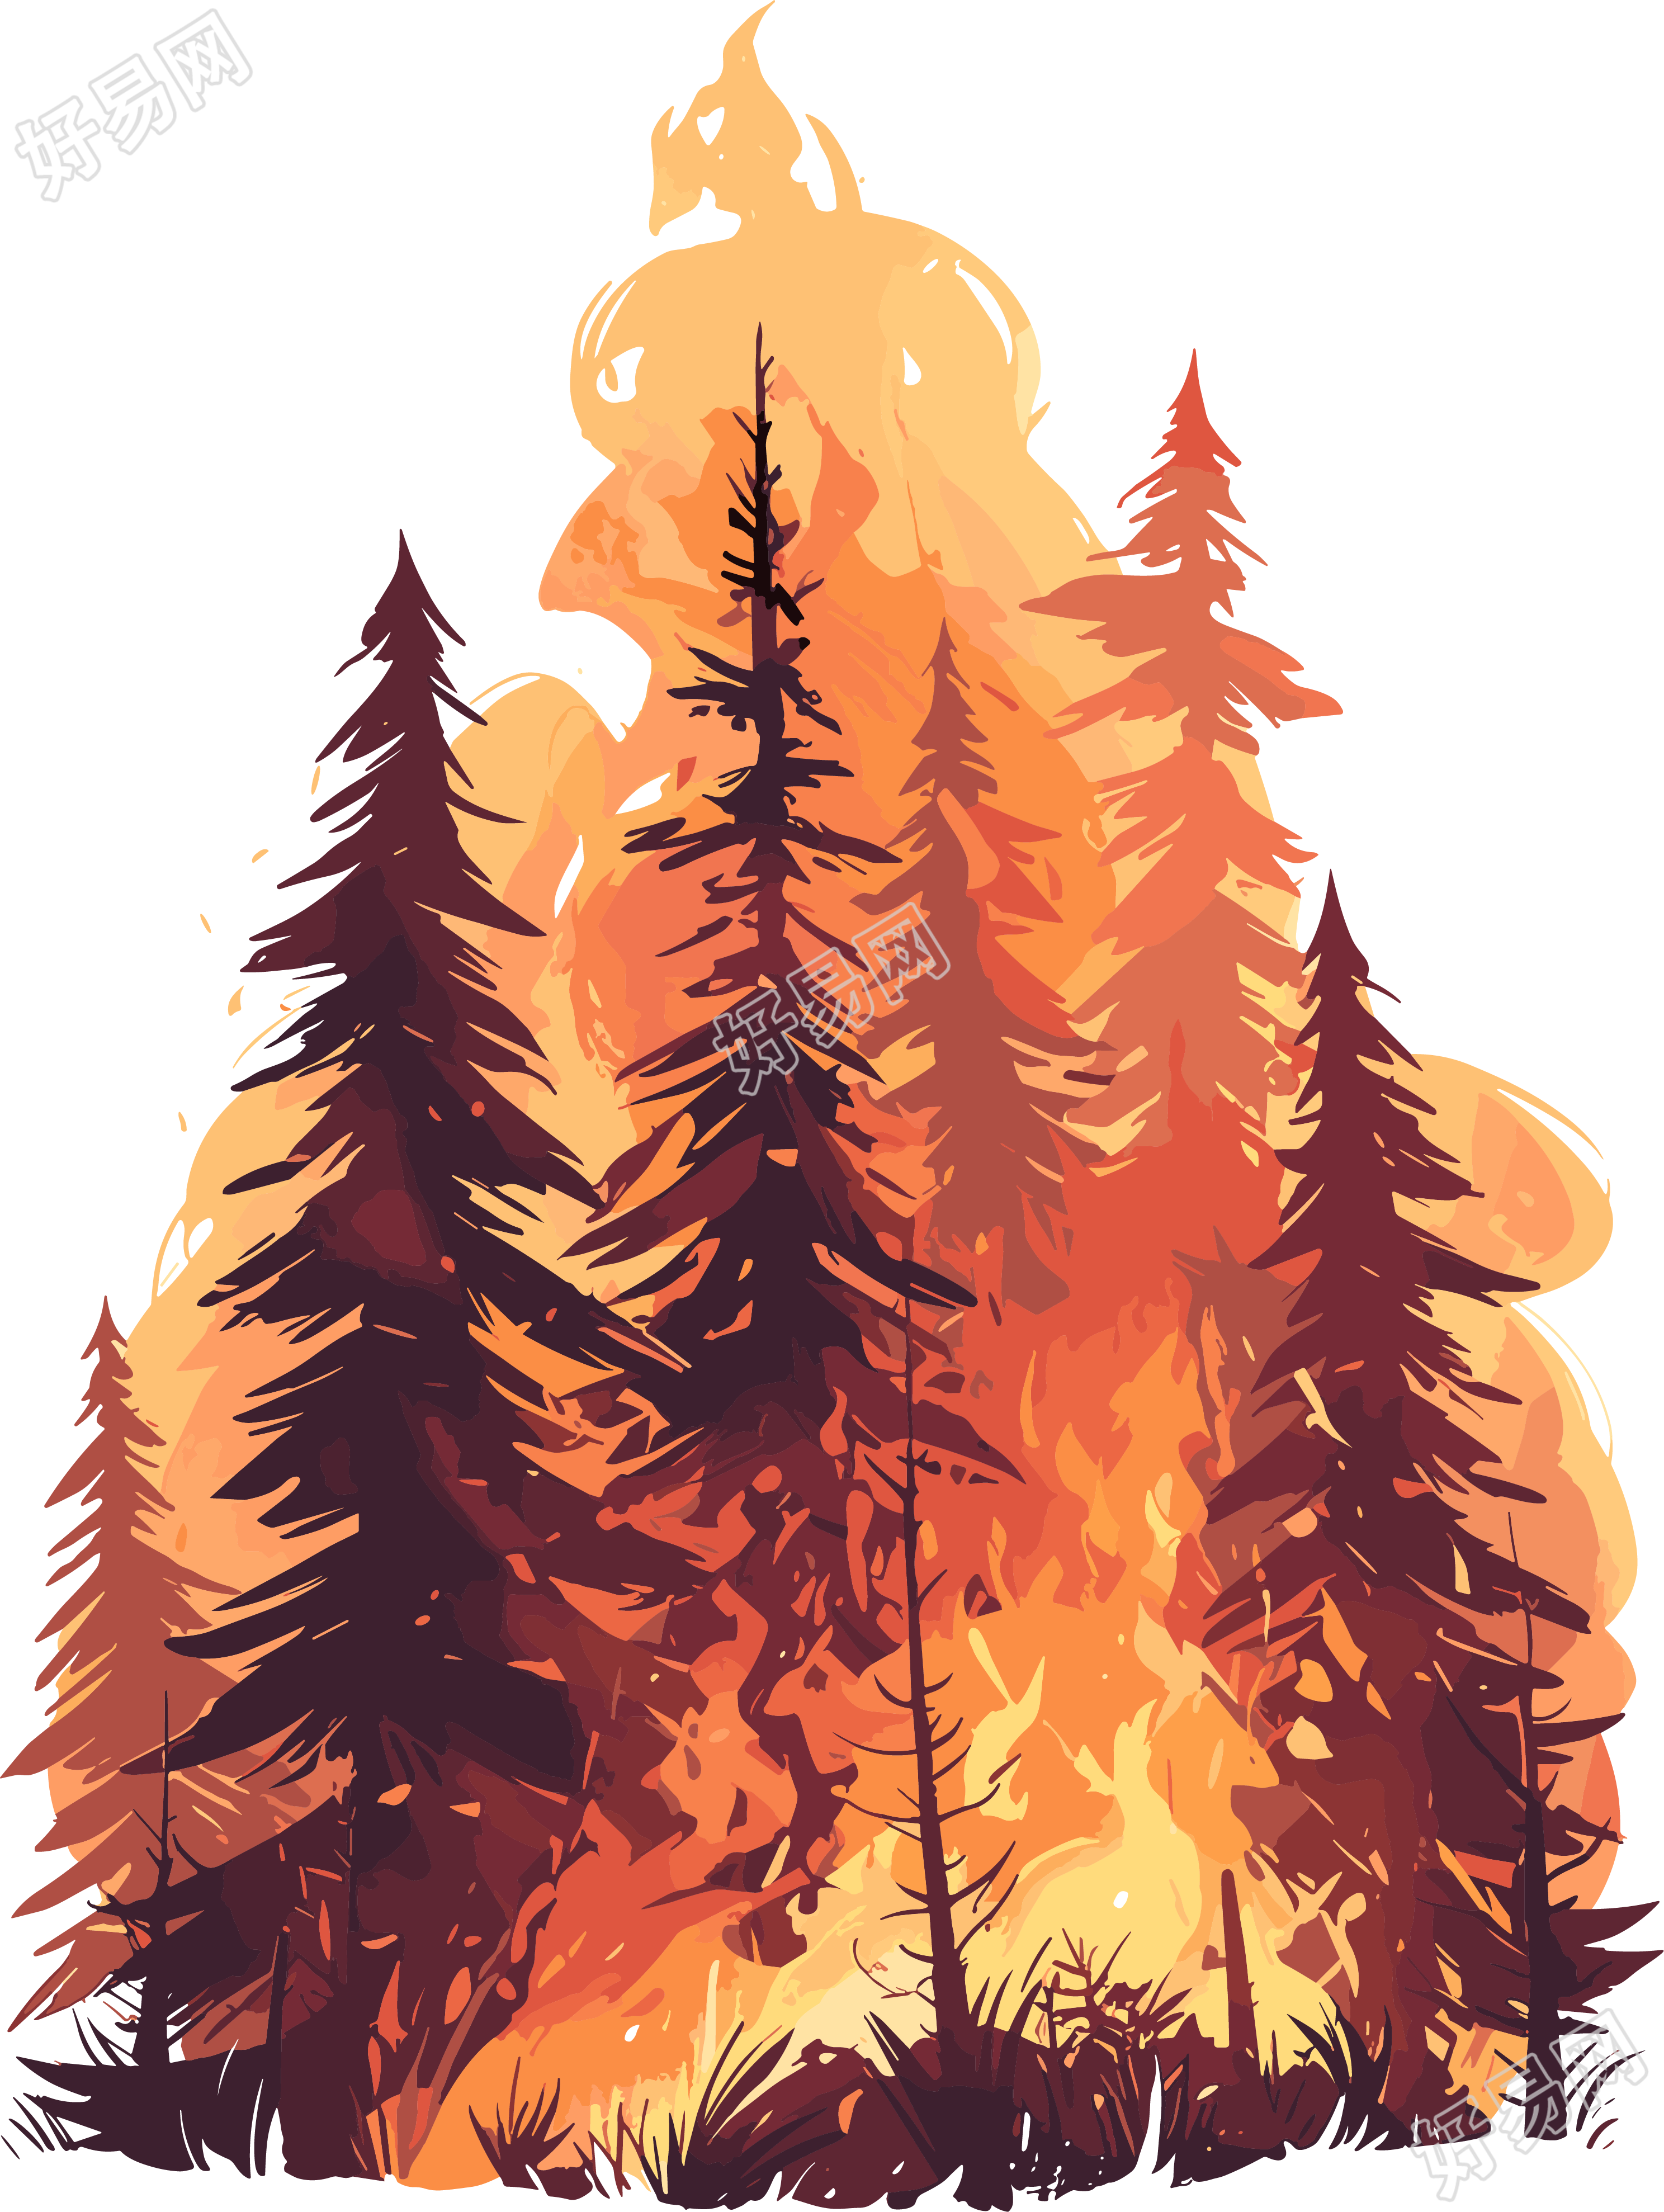 森林火灾插画素材